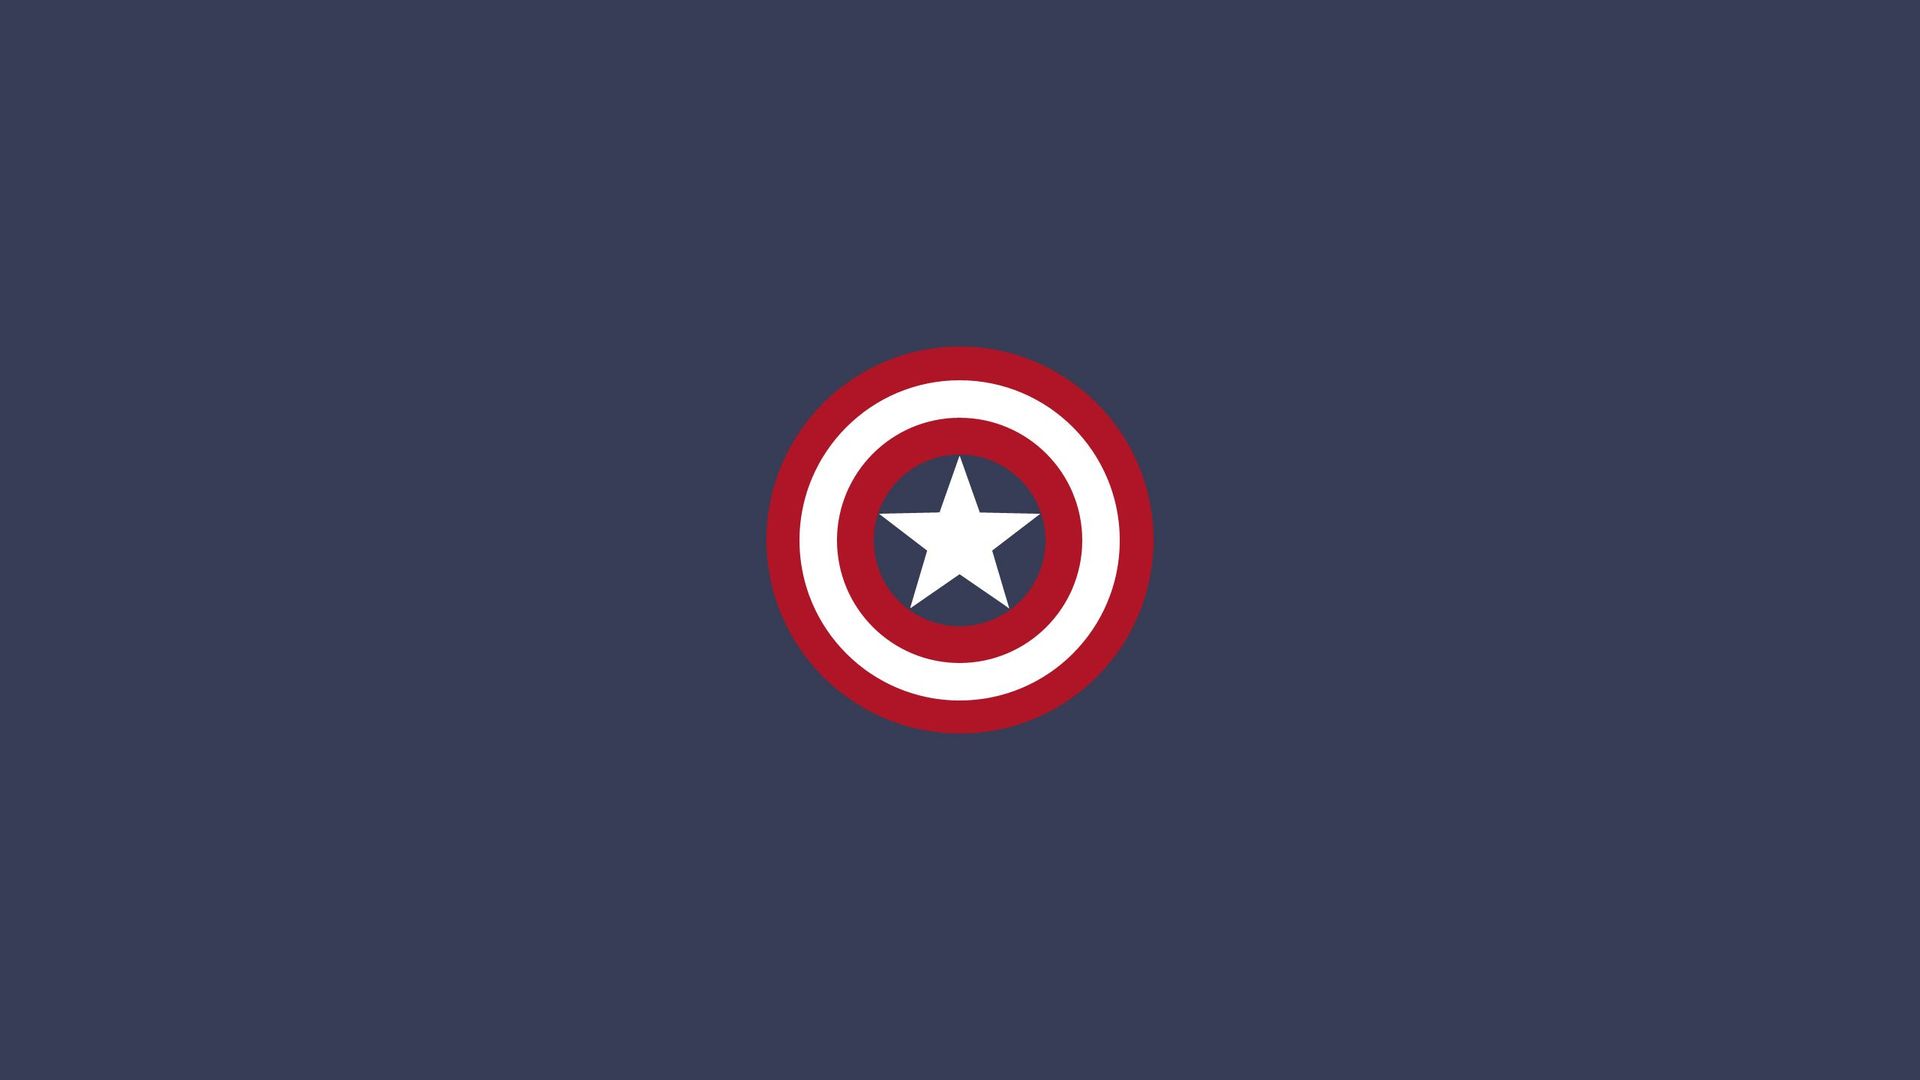 Captain America shield wallpaper 19334 1920x1080